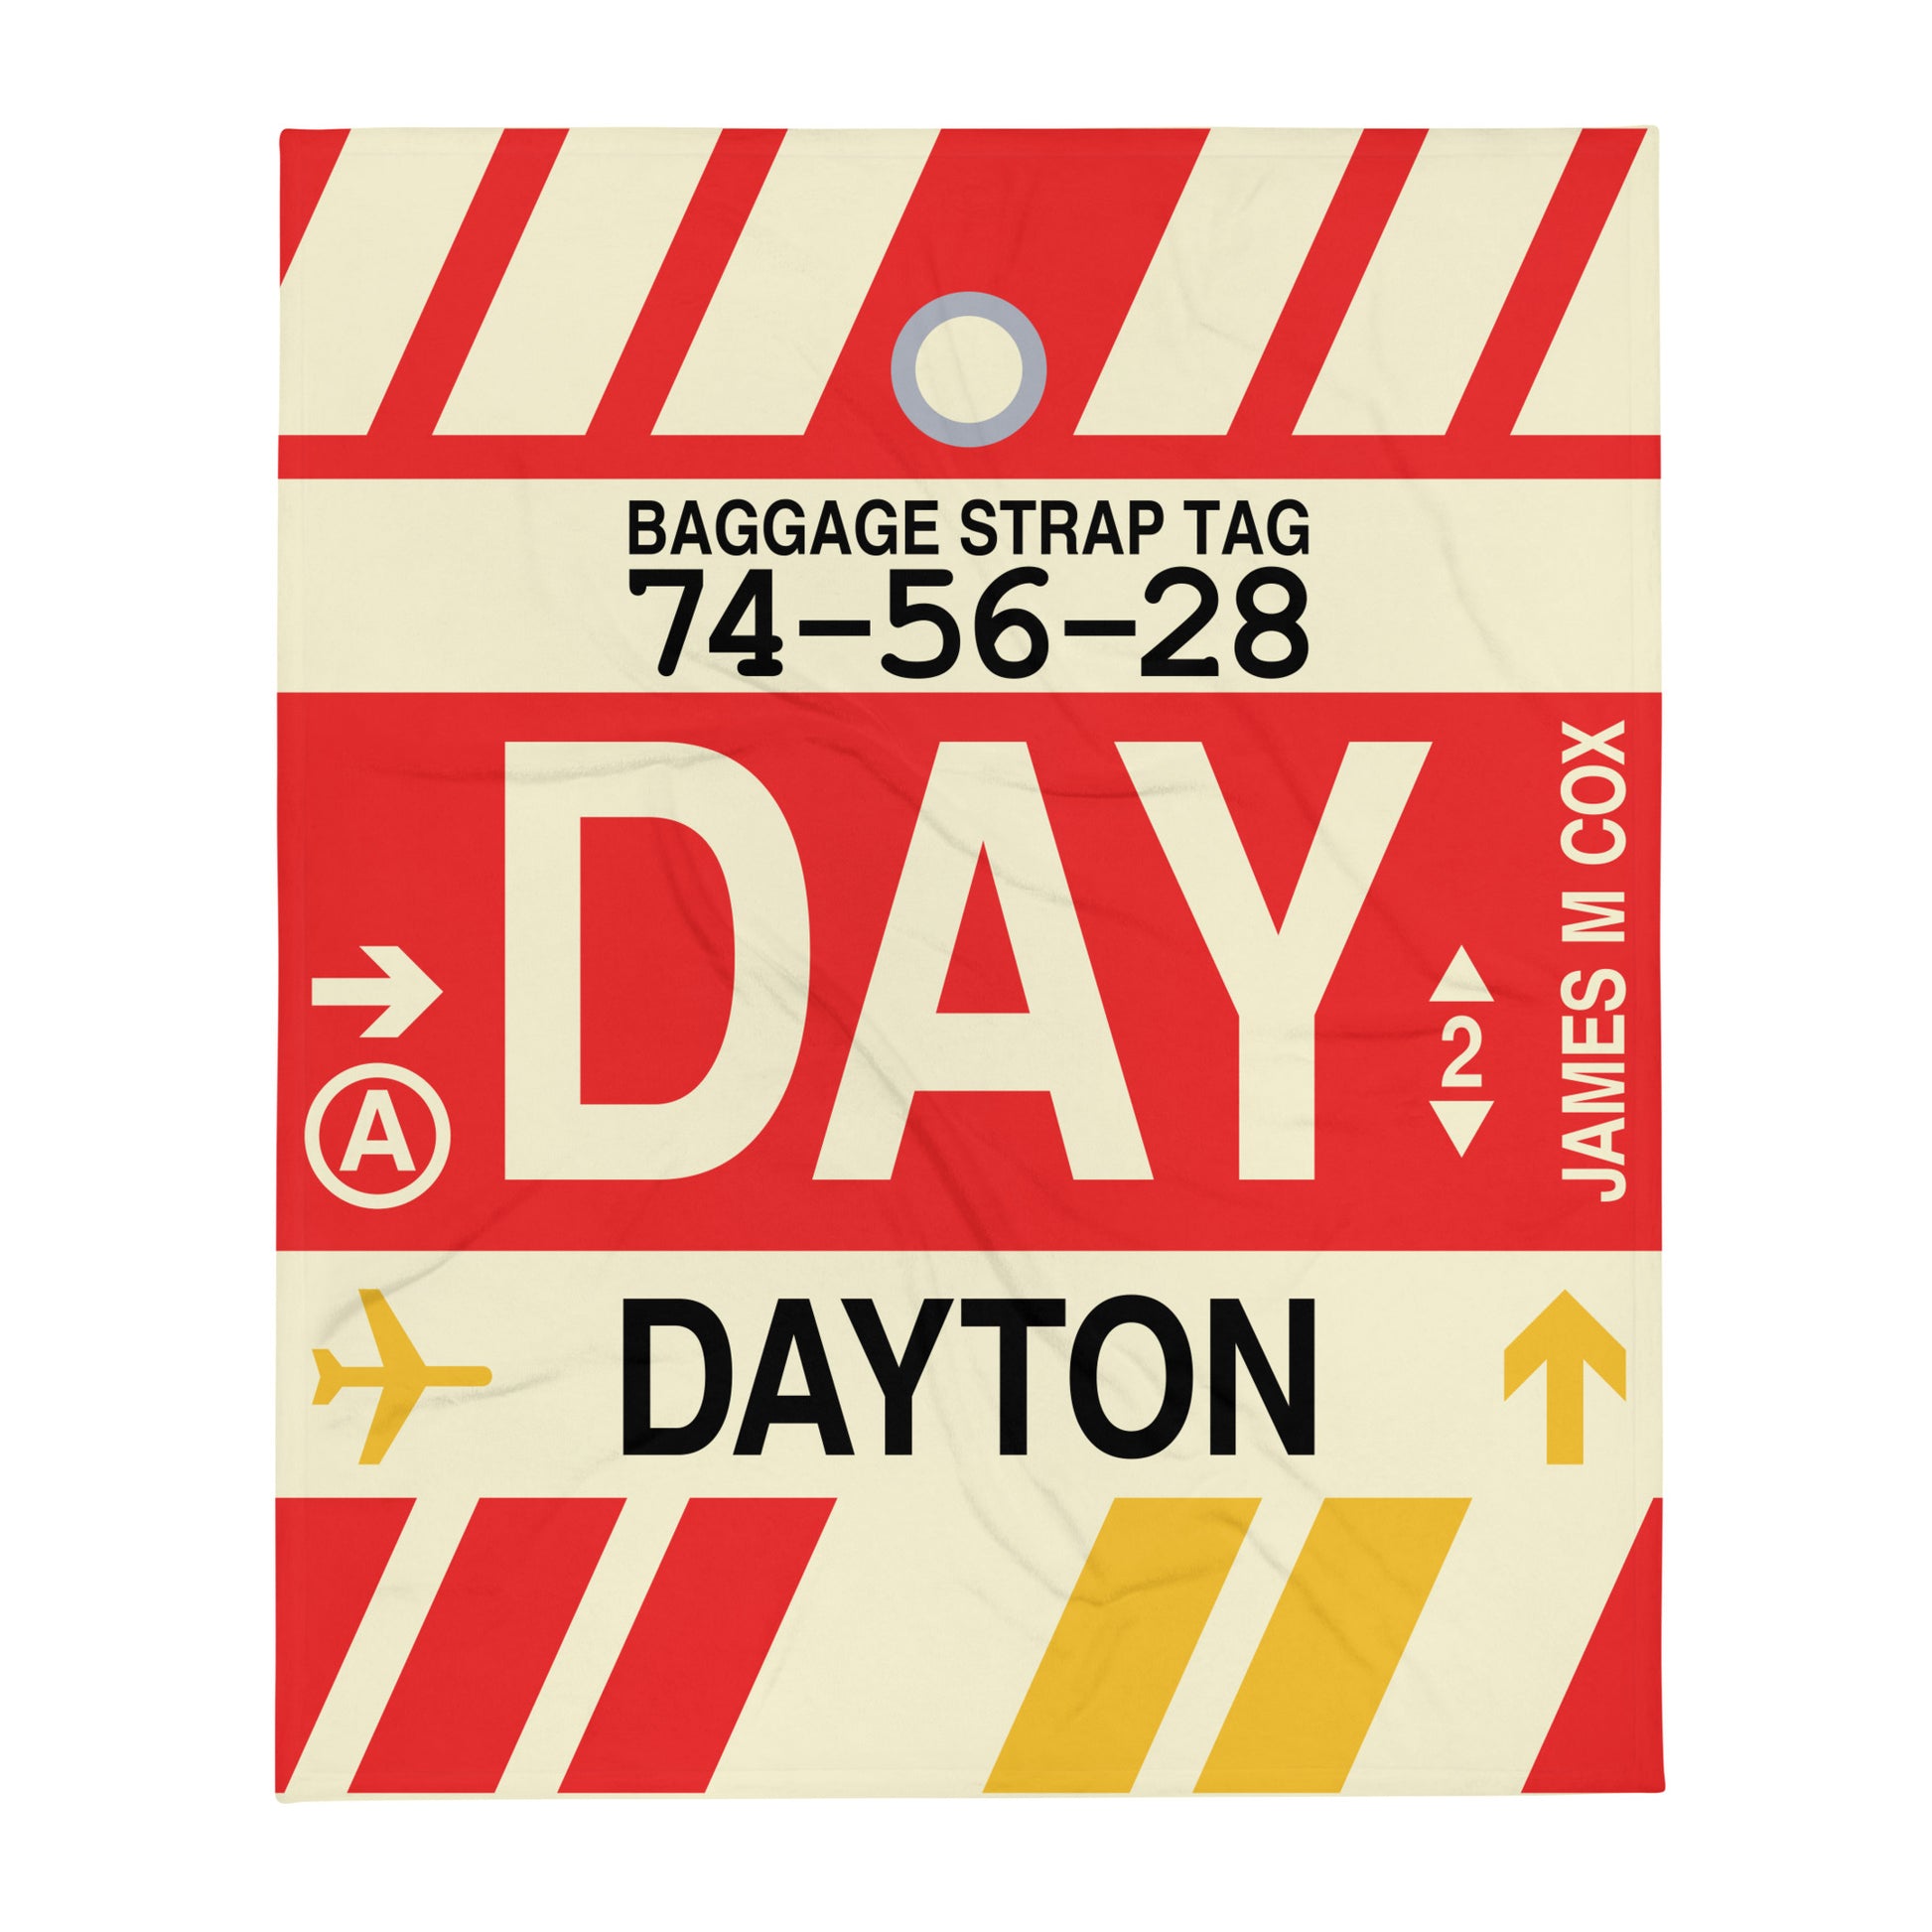 Travel Gift Throw Blanket • DAY Dayton • YHM Designs - Image 01